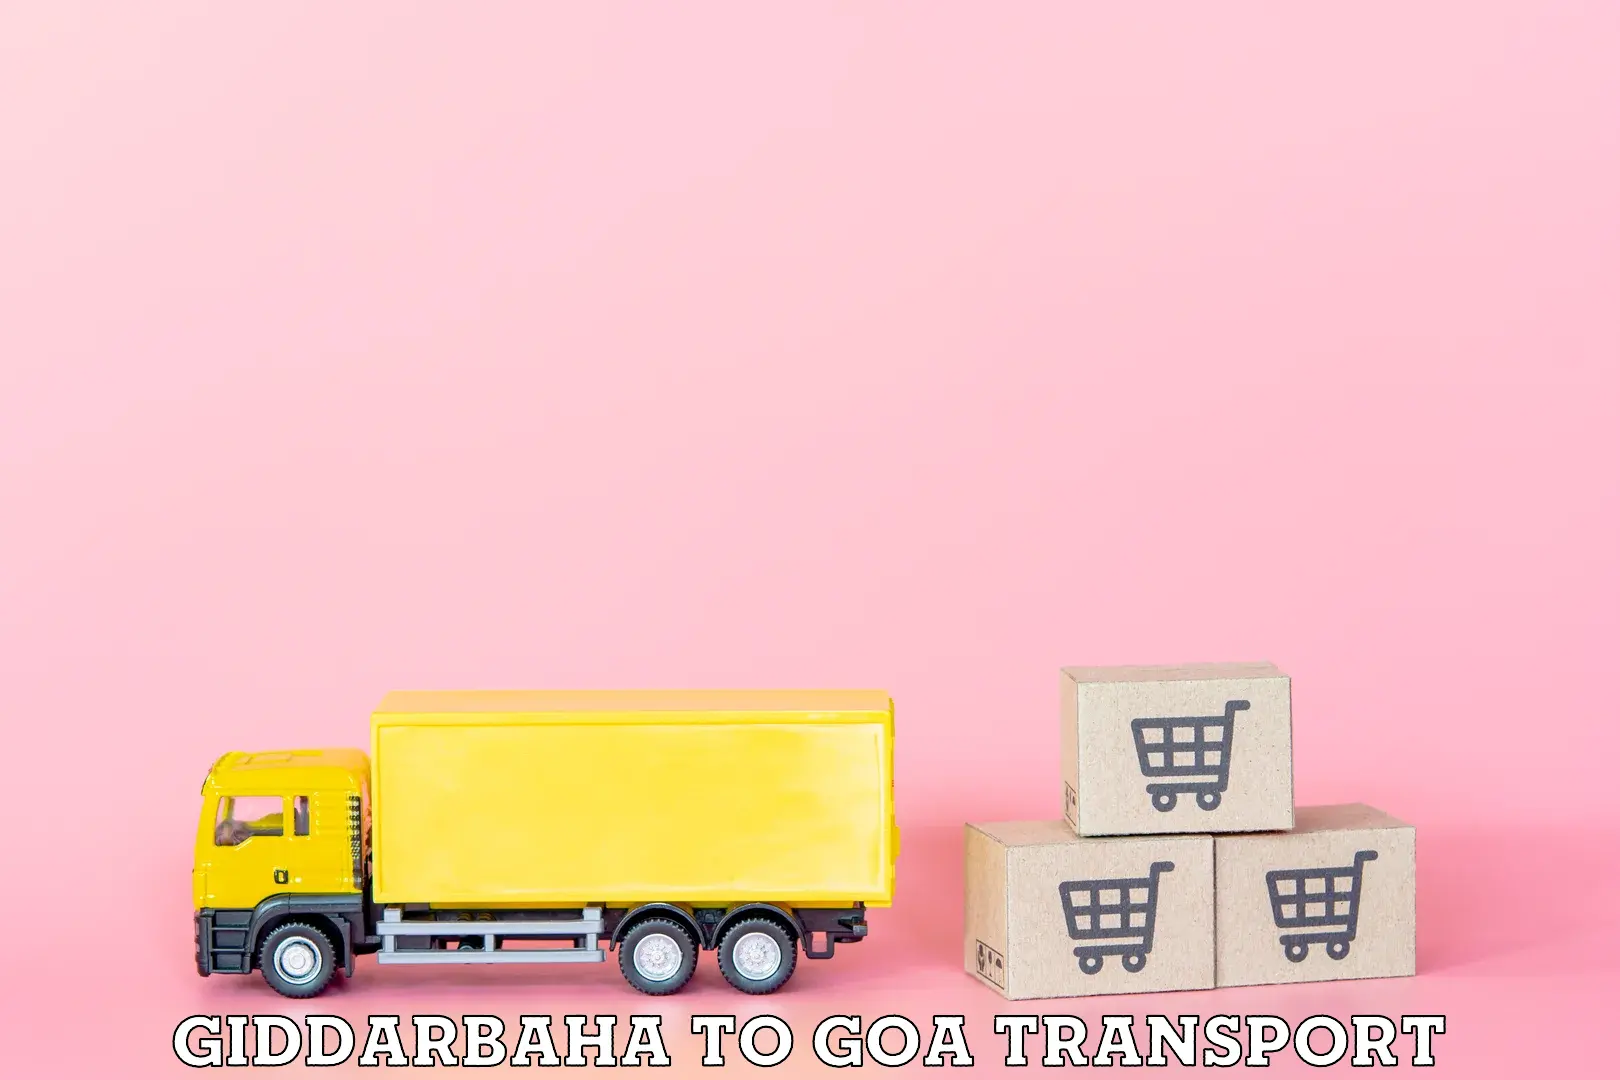 Air freight transport services Giddarbaha to Panaji